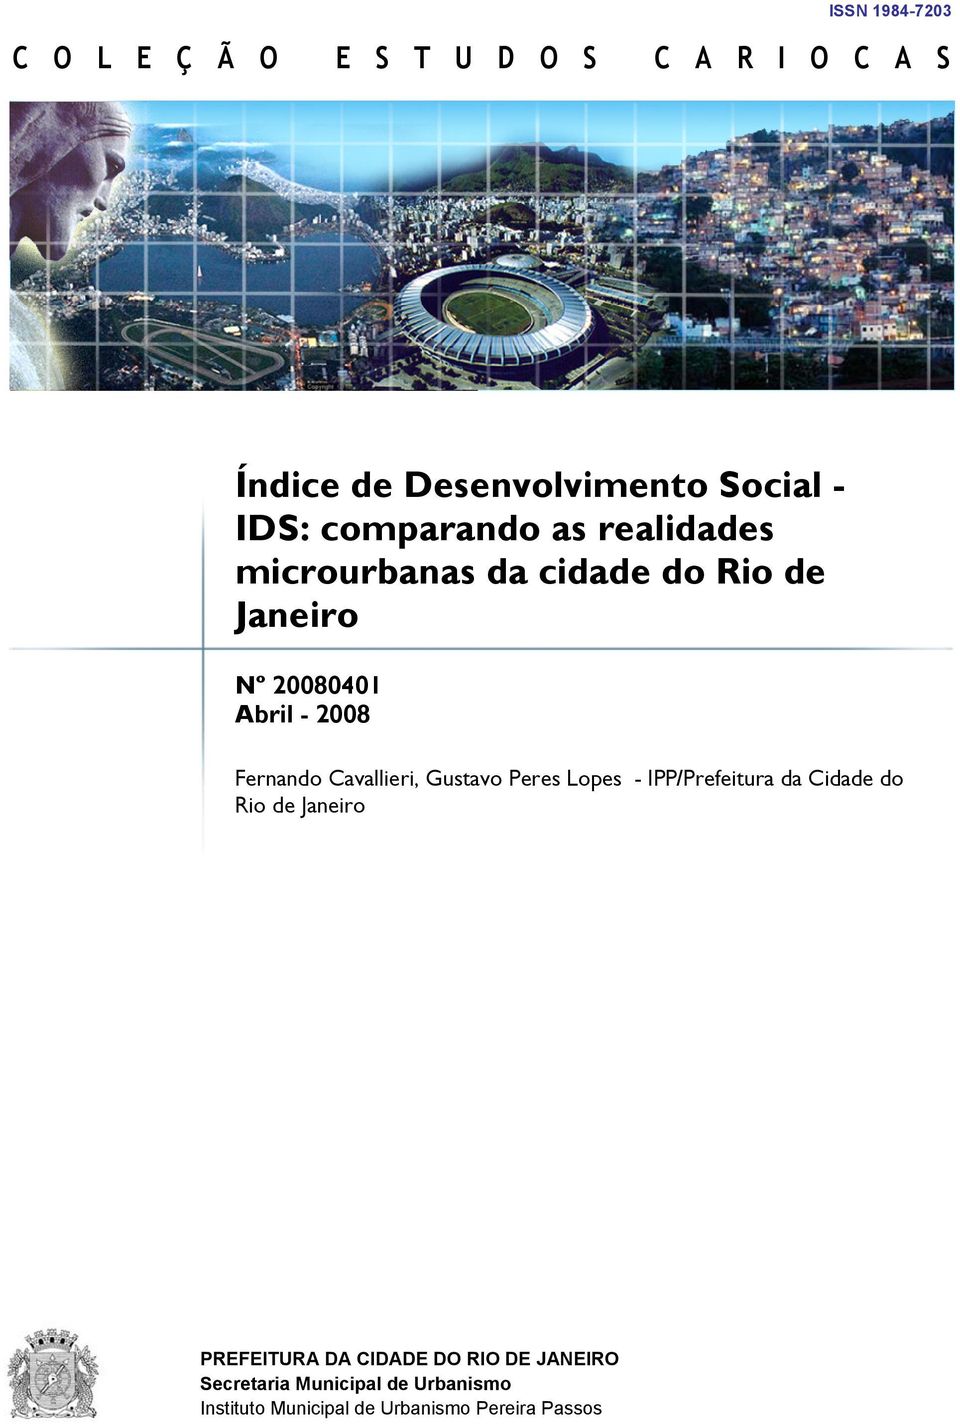 Fernando Cavallieri, Gustavo Peres Lopes - IPP/Prefeitura da Cidade do Rio de Janeiro PREFEITURA